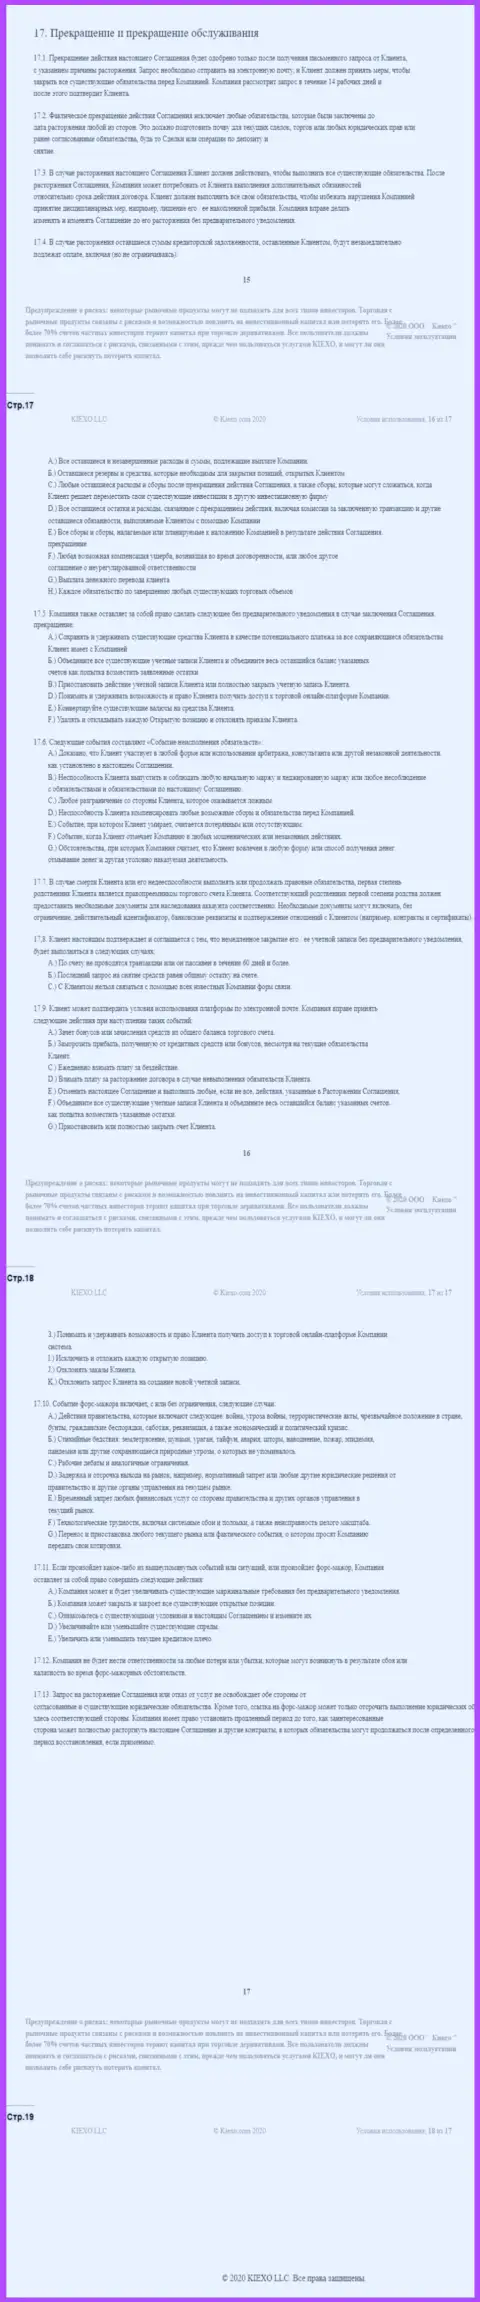 Клиентское соглашение Forex организации Киехо (часть четвертая)